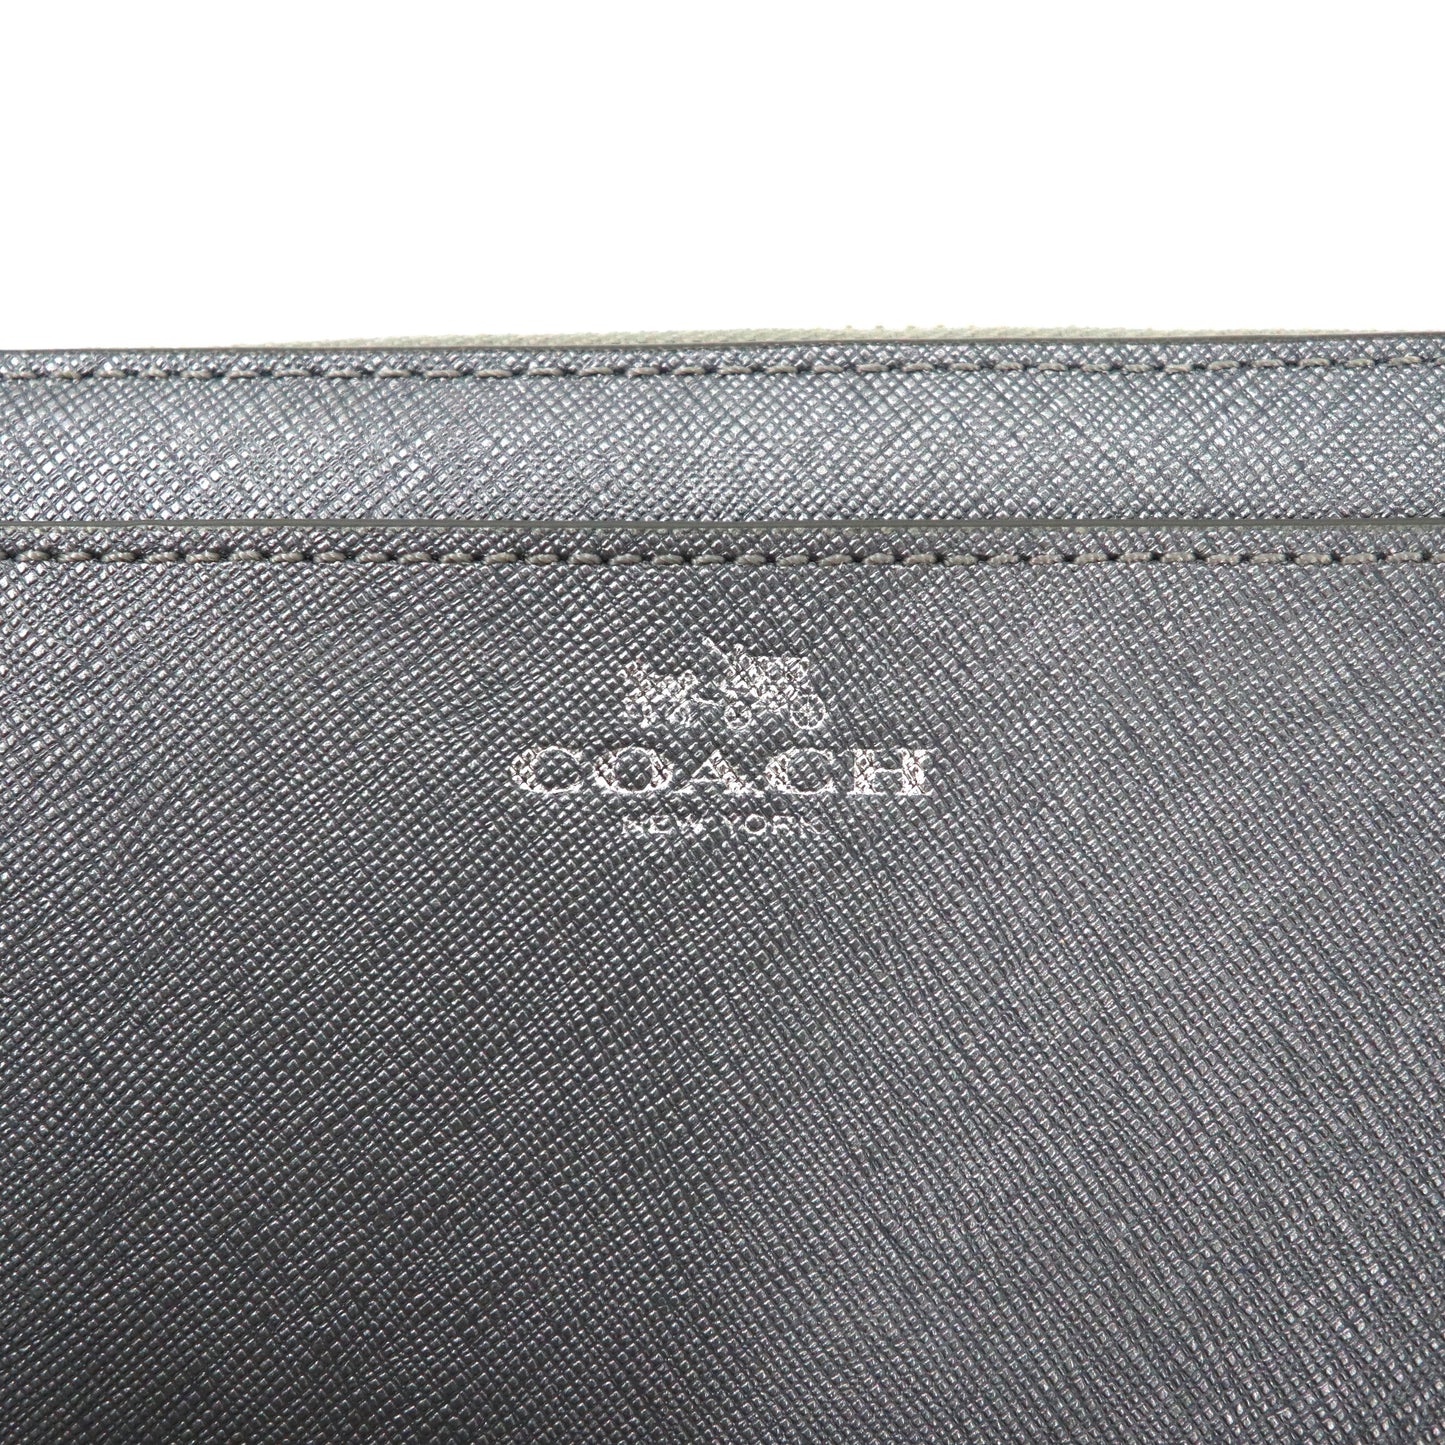 COACH 長財布 シルバー PVC ラウンドファスナー サフィアーノ アコーディオン F50427 クロスグレインレザー